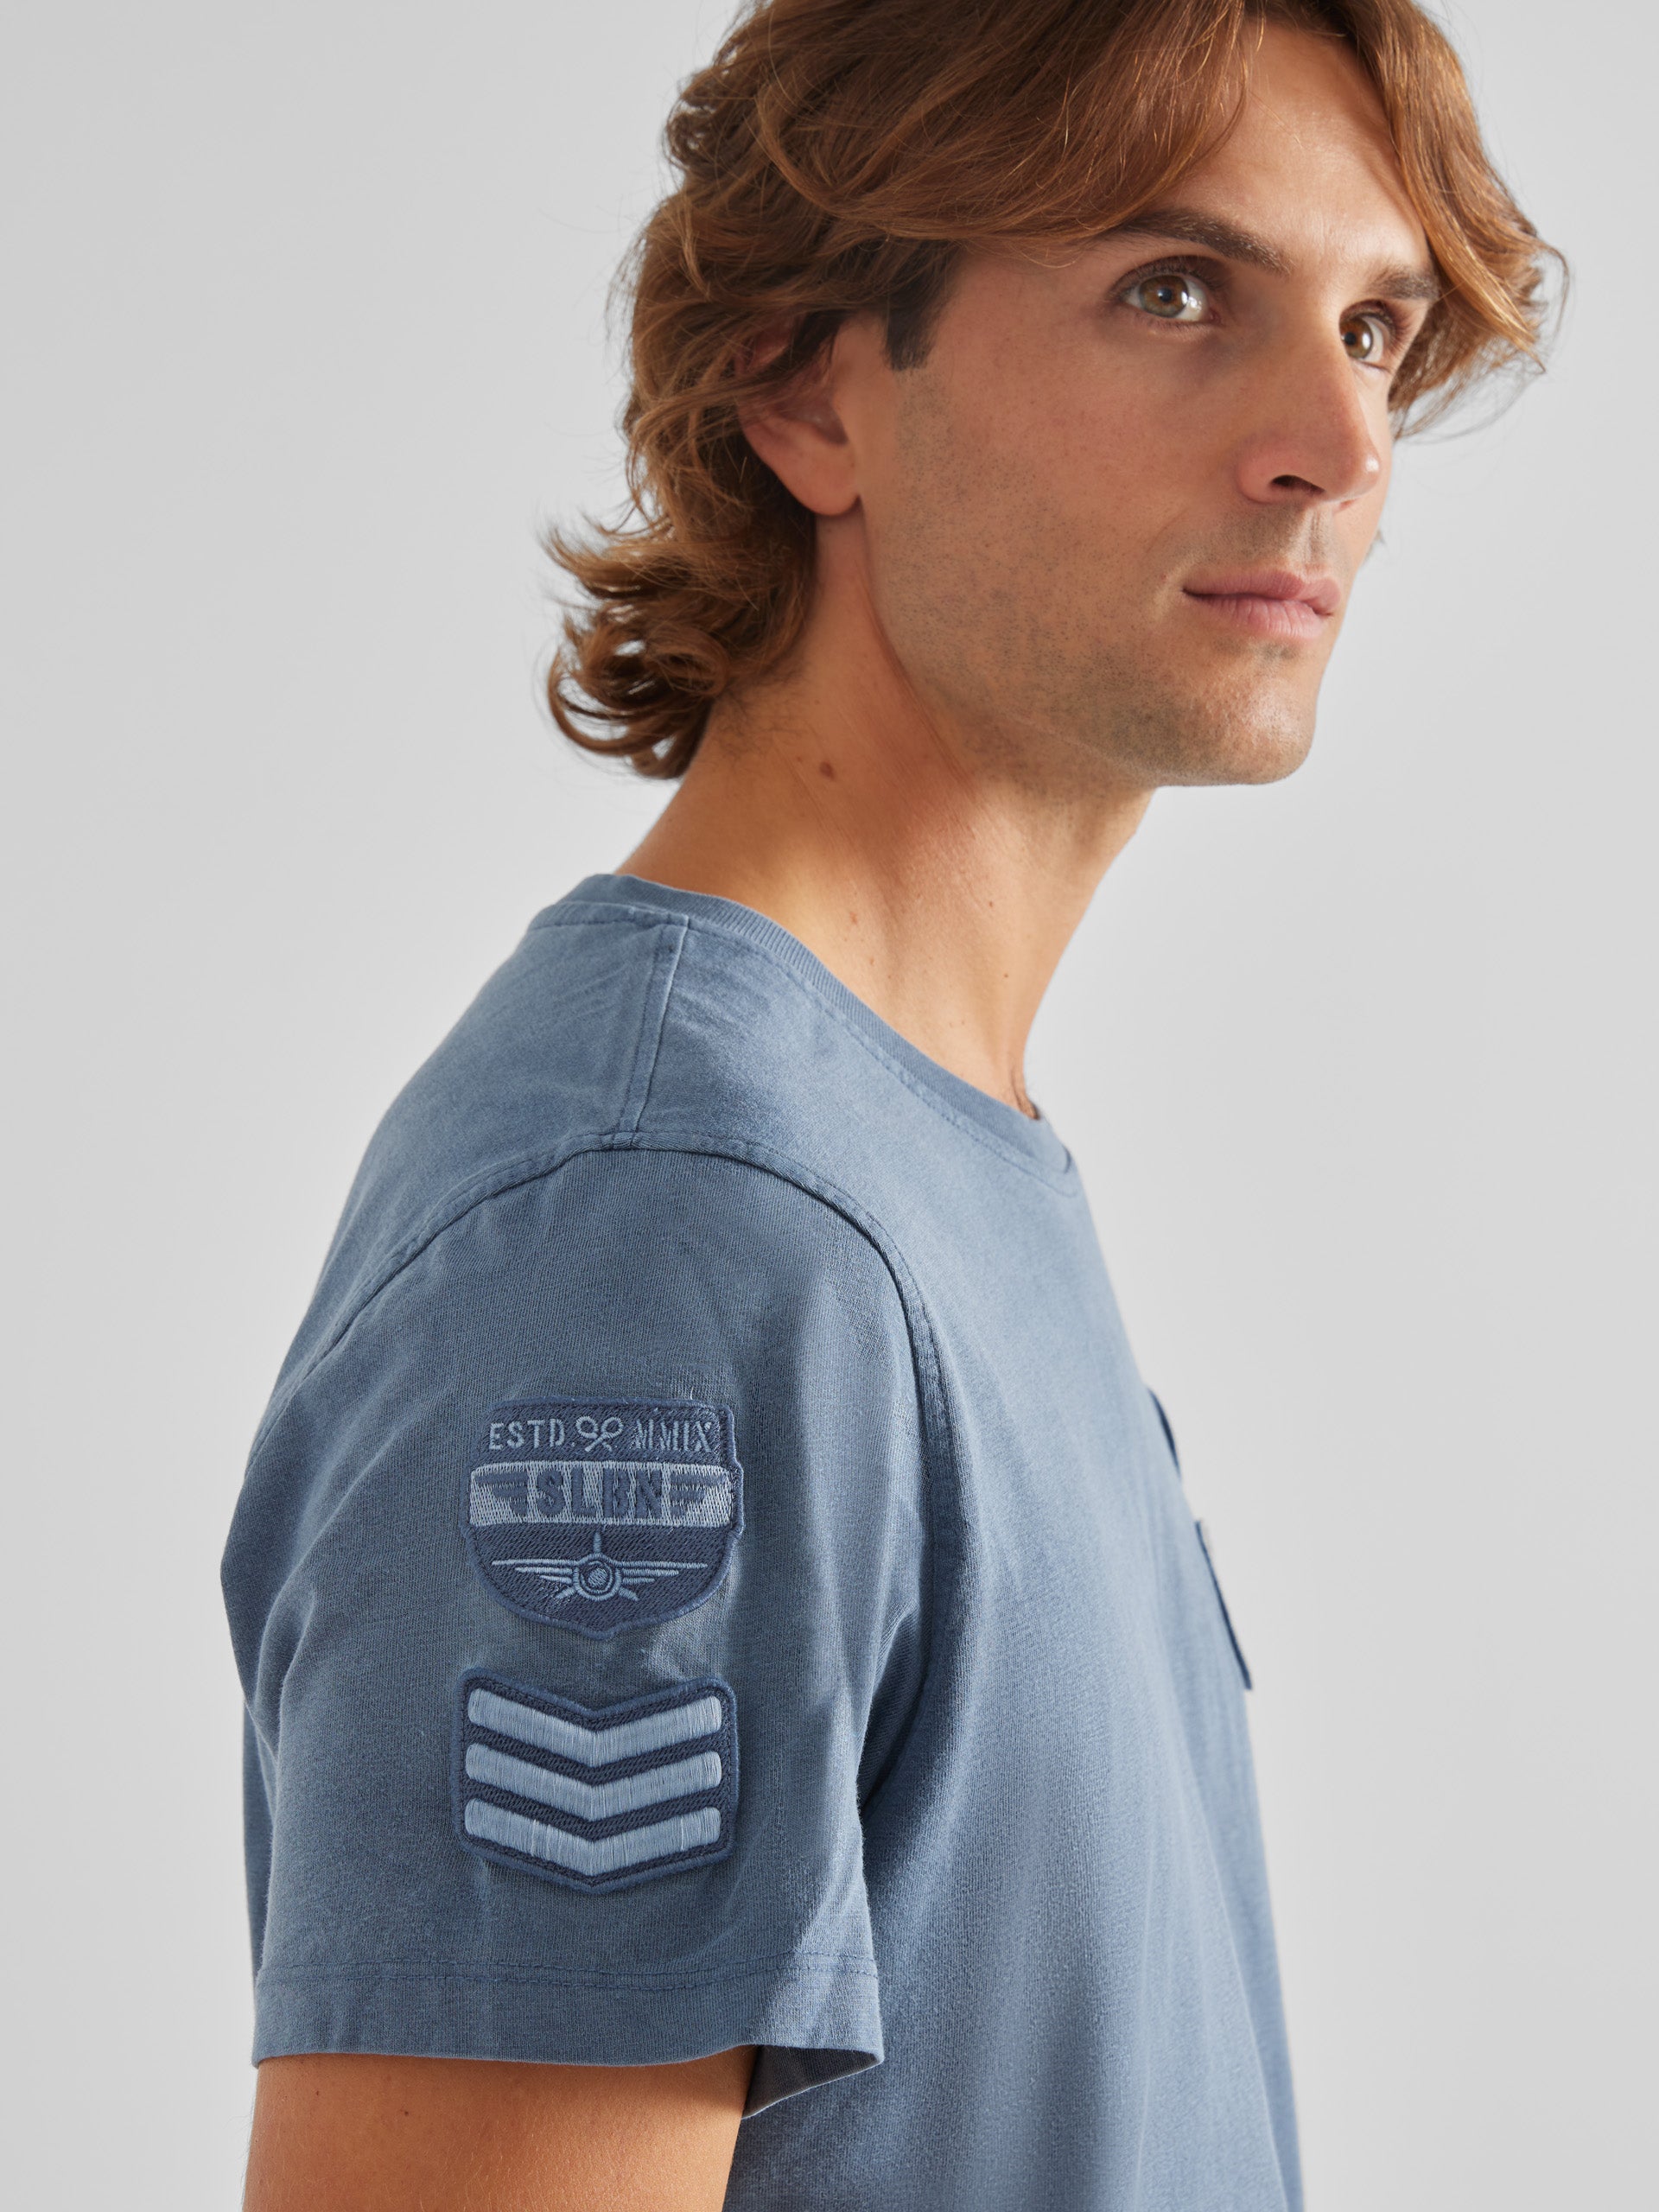 T-shirt patch bleu marine